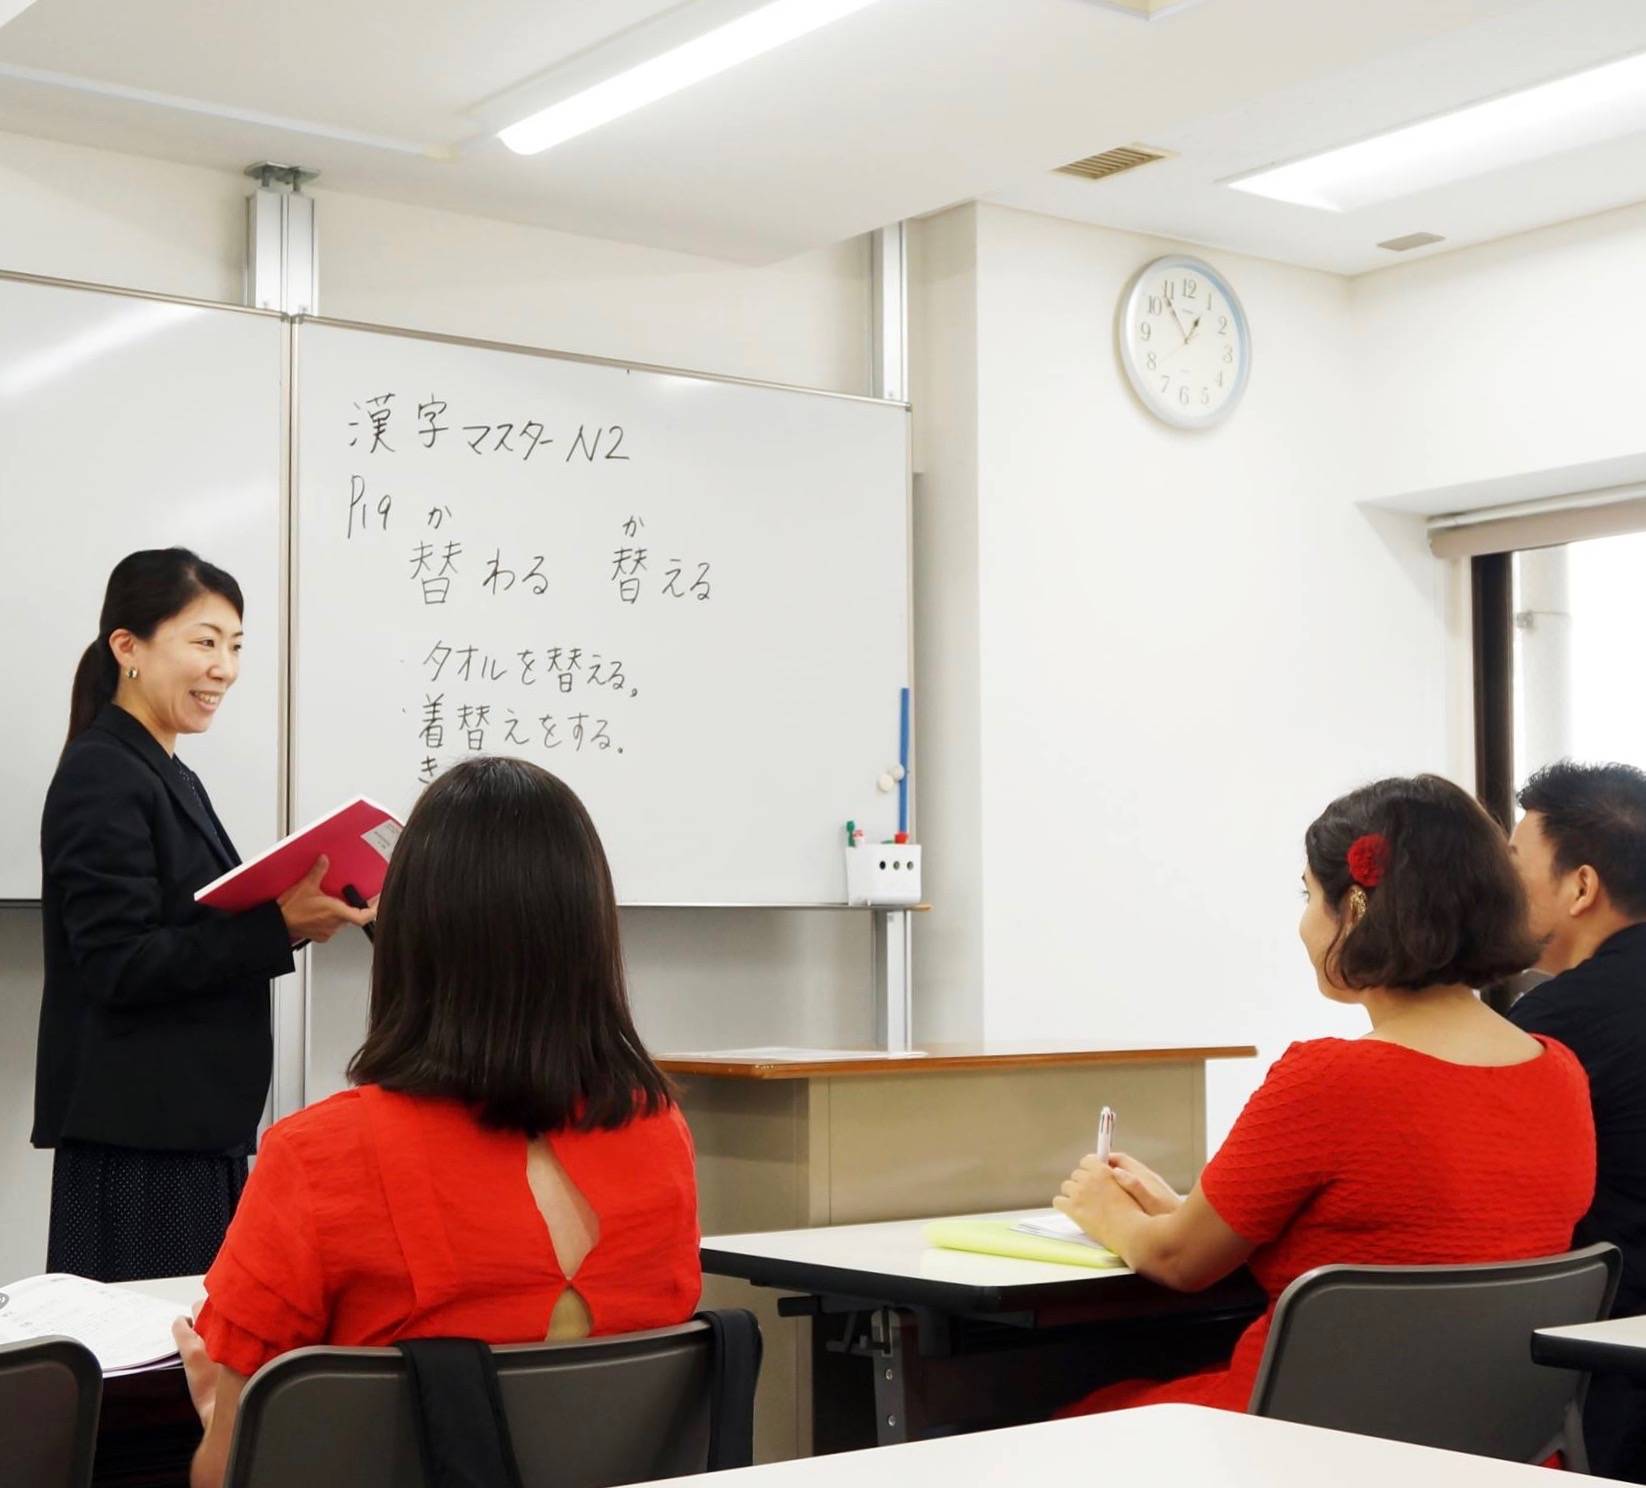 3 вида образования в японии: дошкольное, школьное, высшее